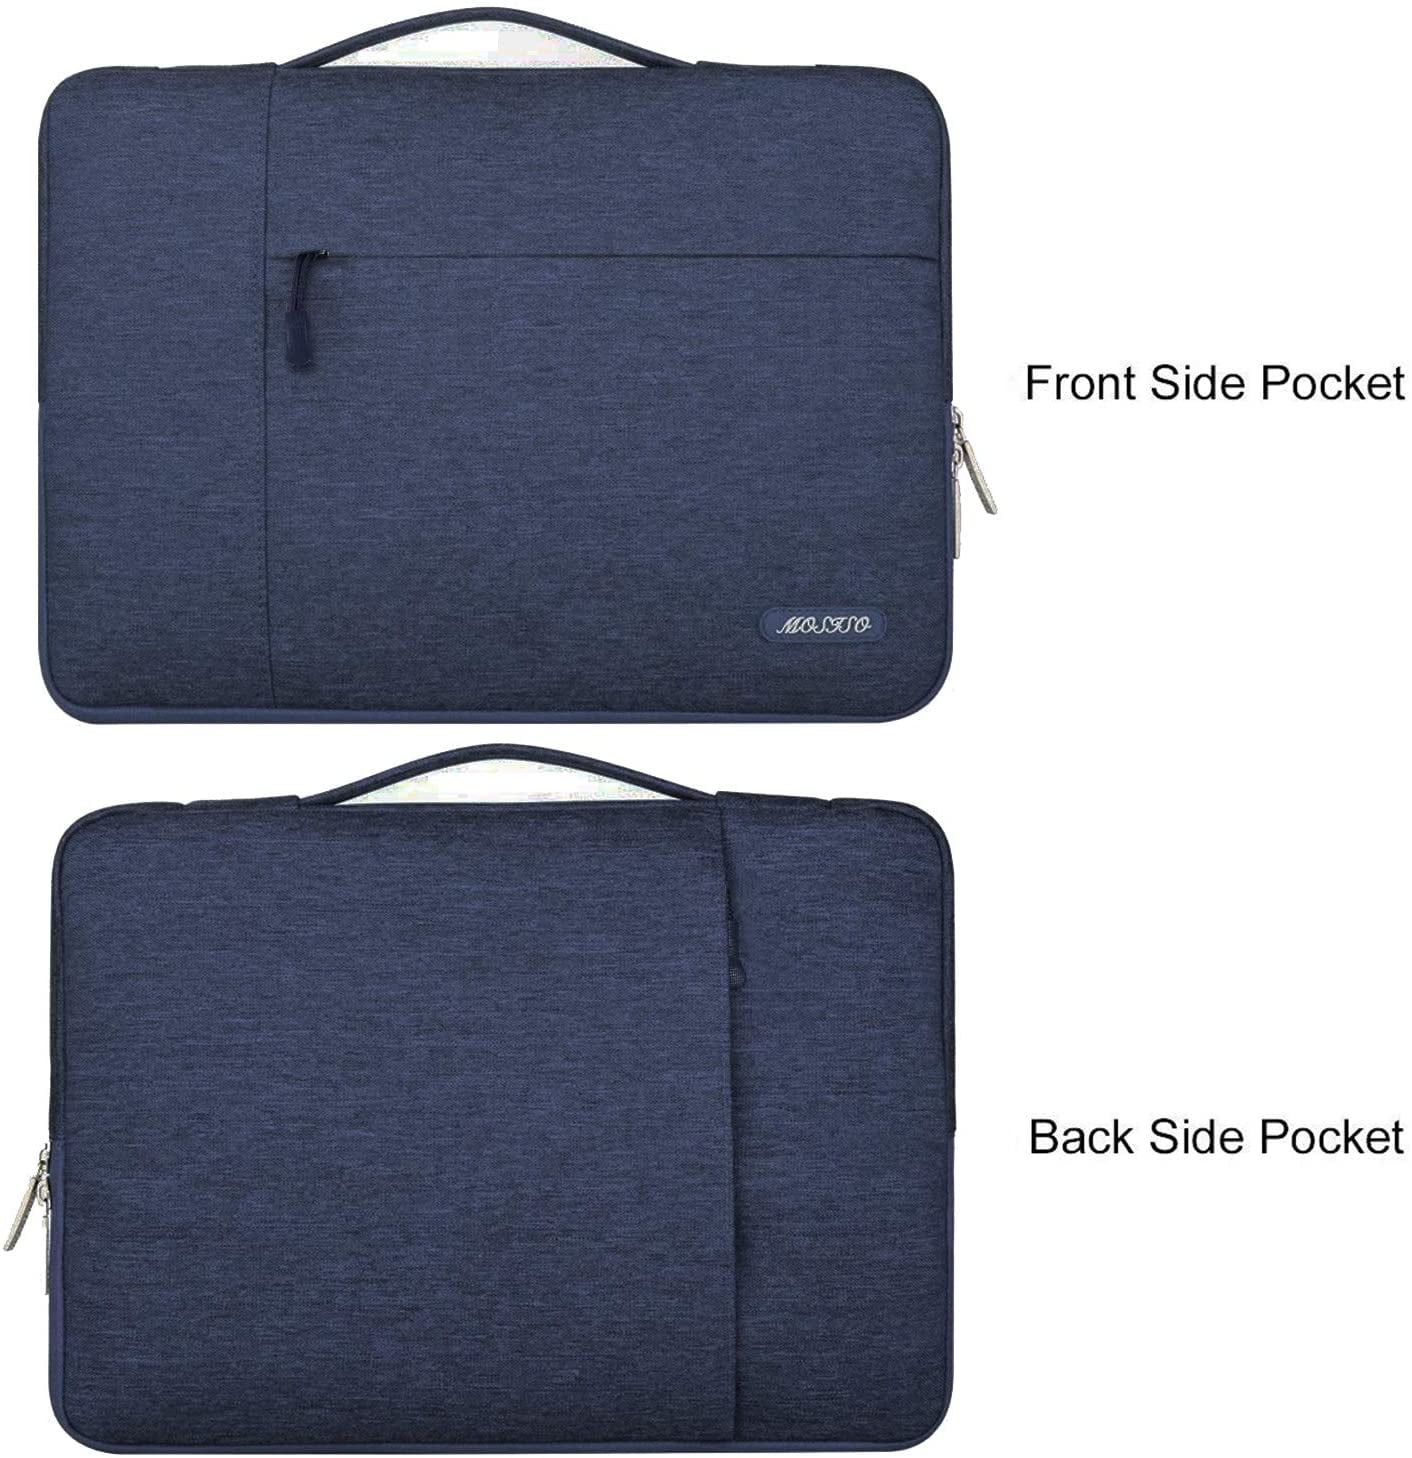 13 inch laptop briefcase